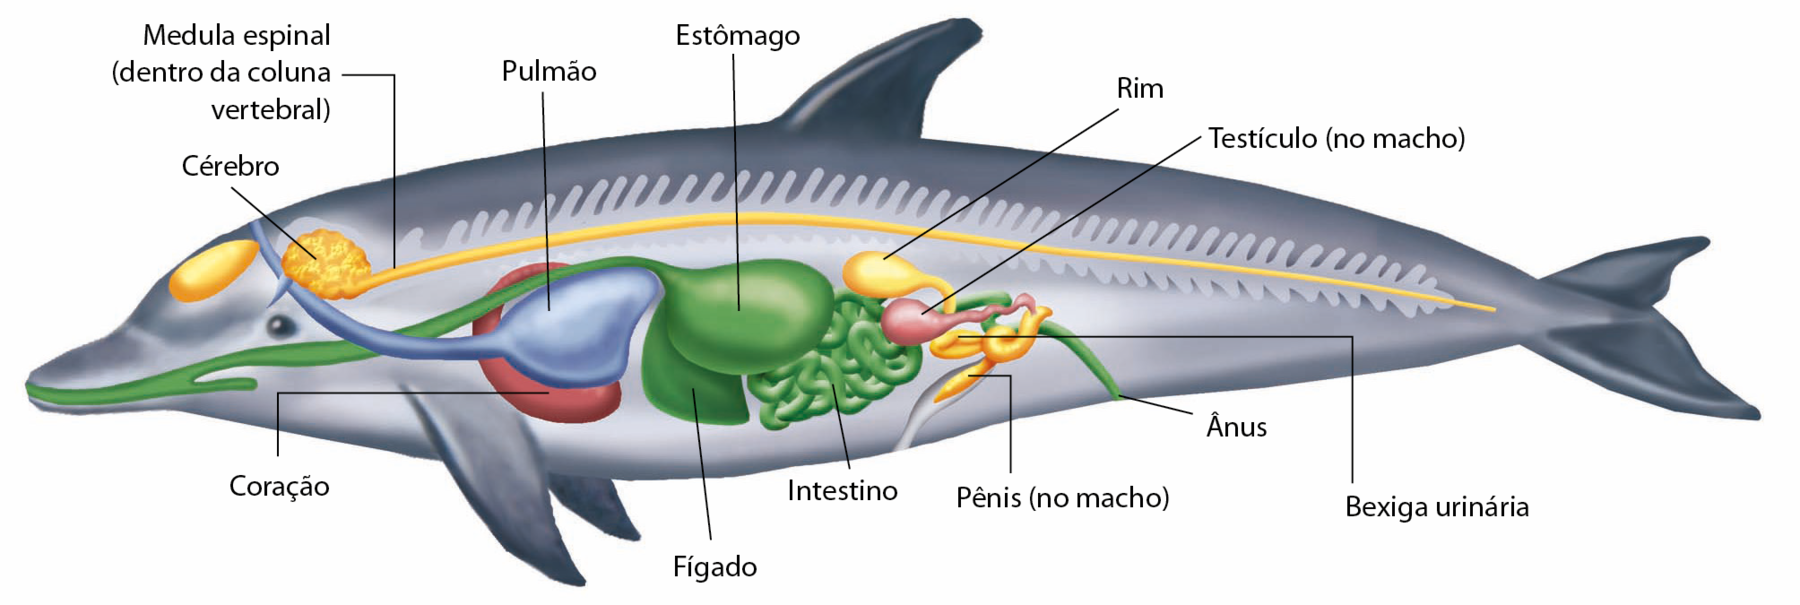 Esquema. Anatomia interna de um golfinho. Na parte anterior do corpo, cérebro, de onde sai cordão que percorre toda a extensão do corpo: a medula espinal (dentro da coluna vertebral). Pulmão. Coração. Fígado. Estômago, que liga ao intestino e termina no ânus. Testículo (no macho), pênis (no macho), rim e bexiga urinária.